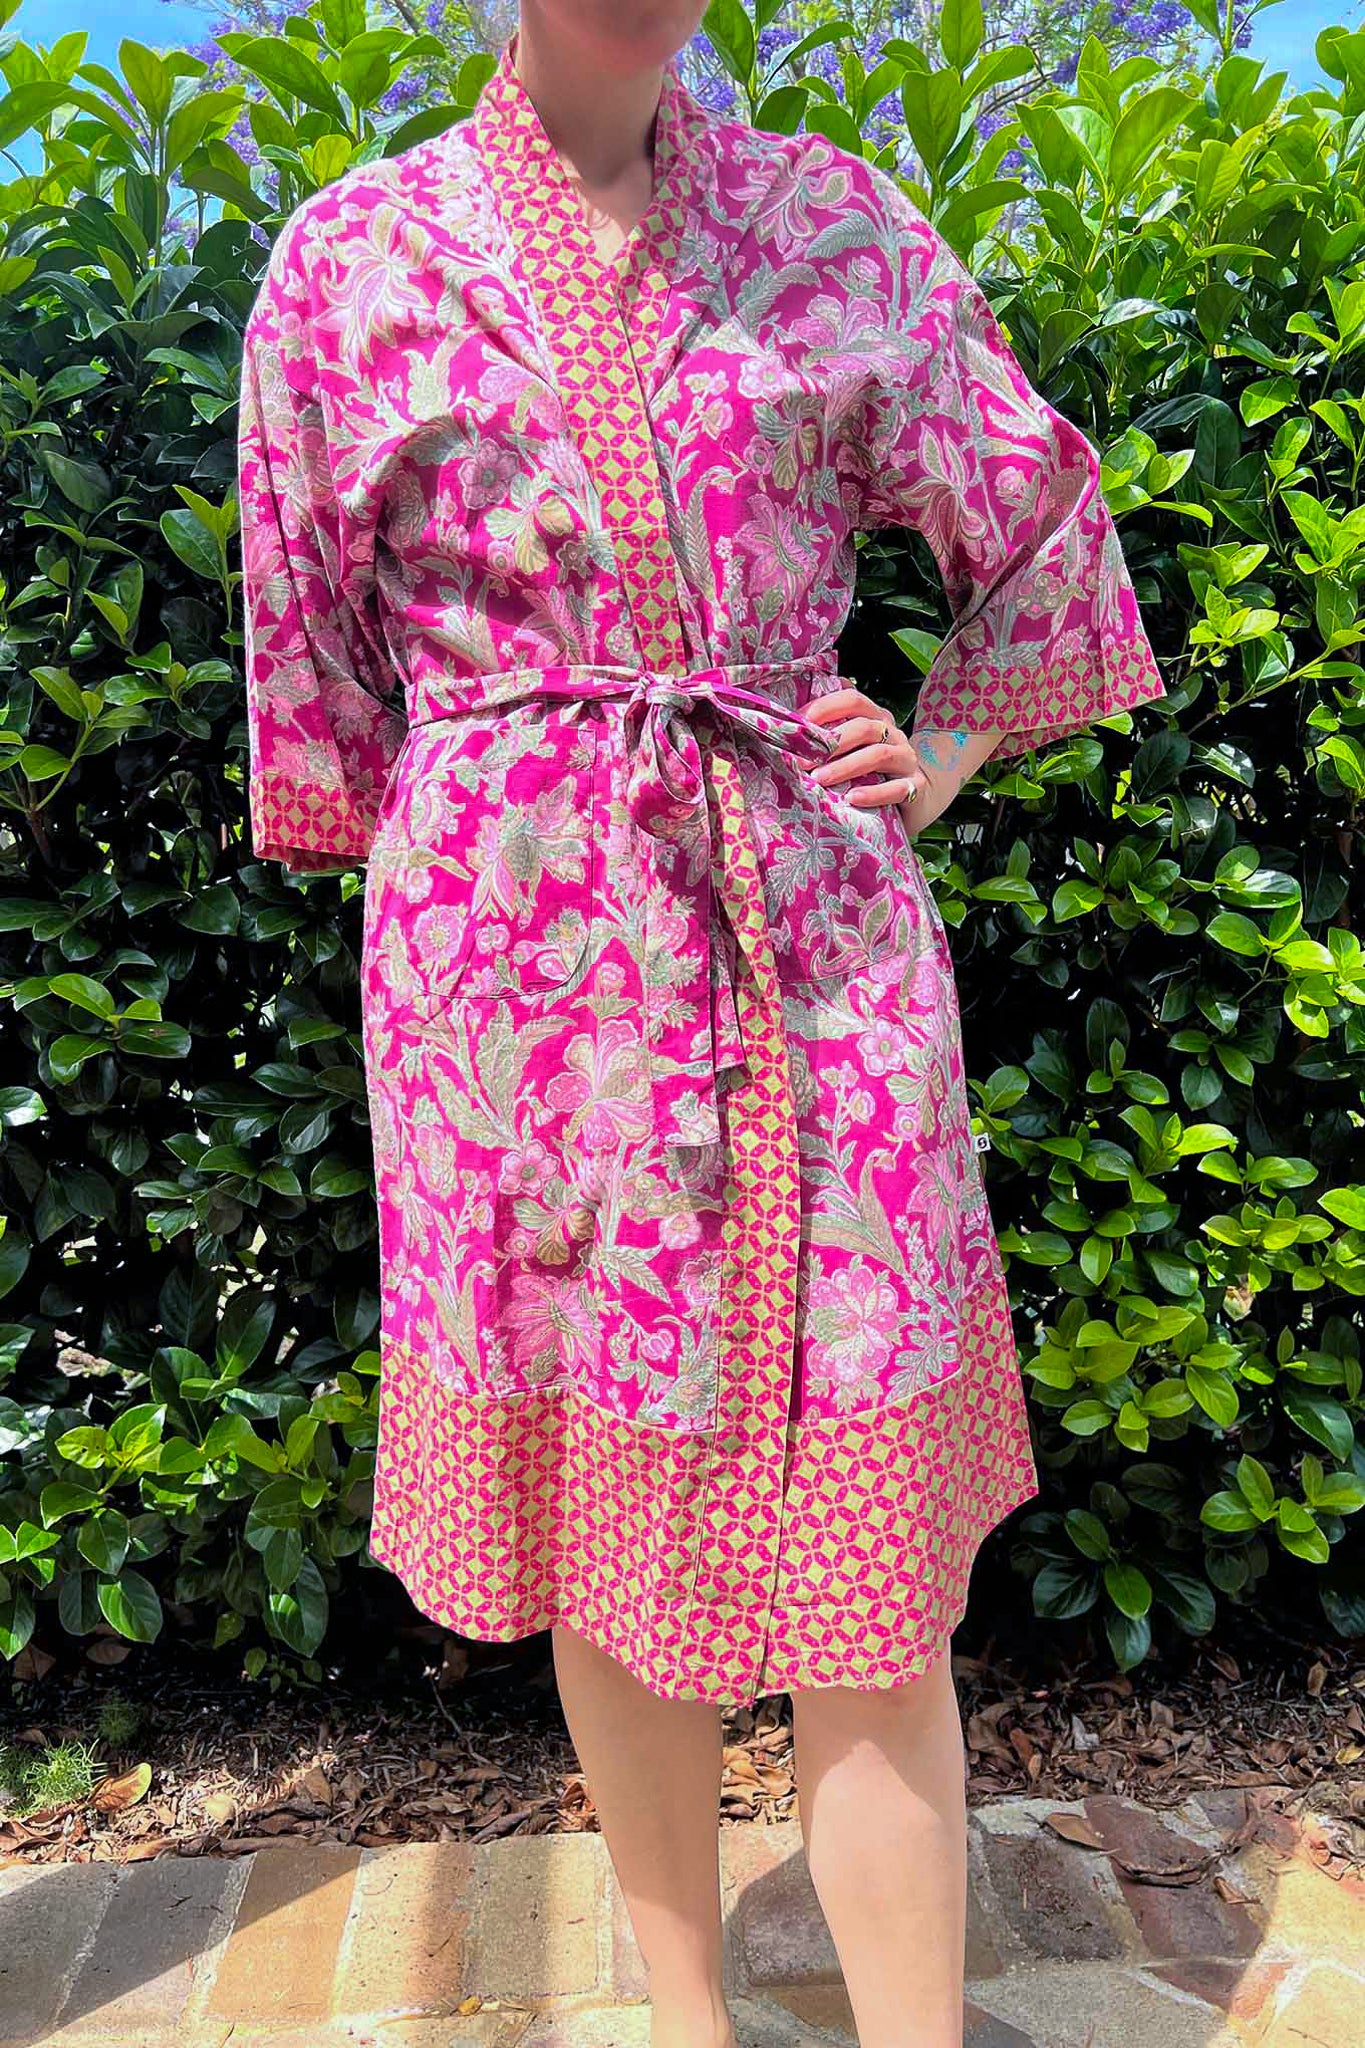 Juniper Hearth pure cotton kimono robe in magenta pink floral print with contrasting trim.